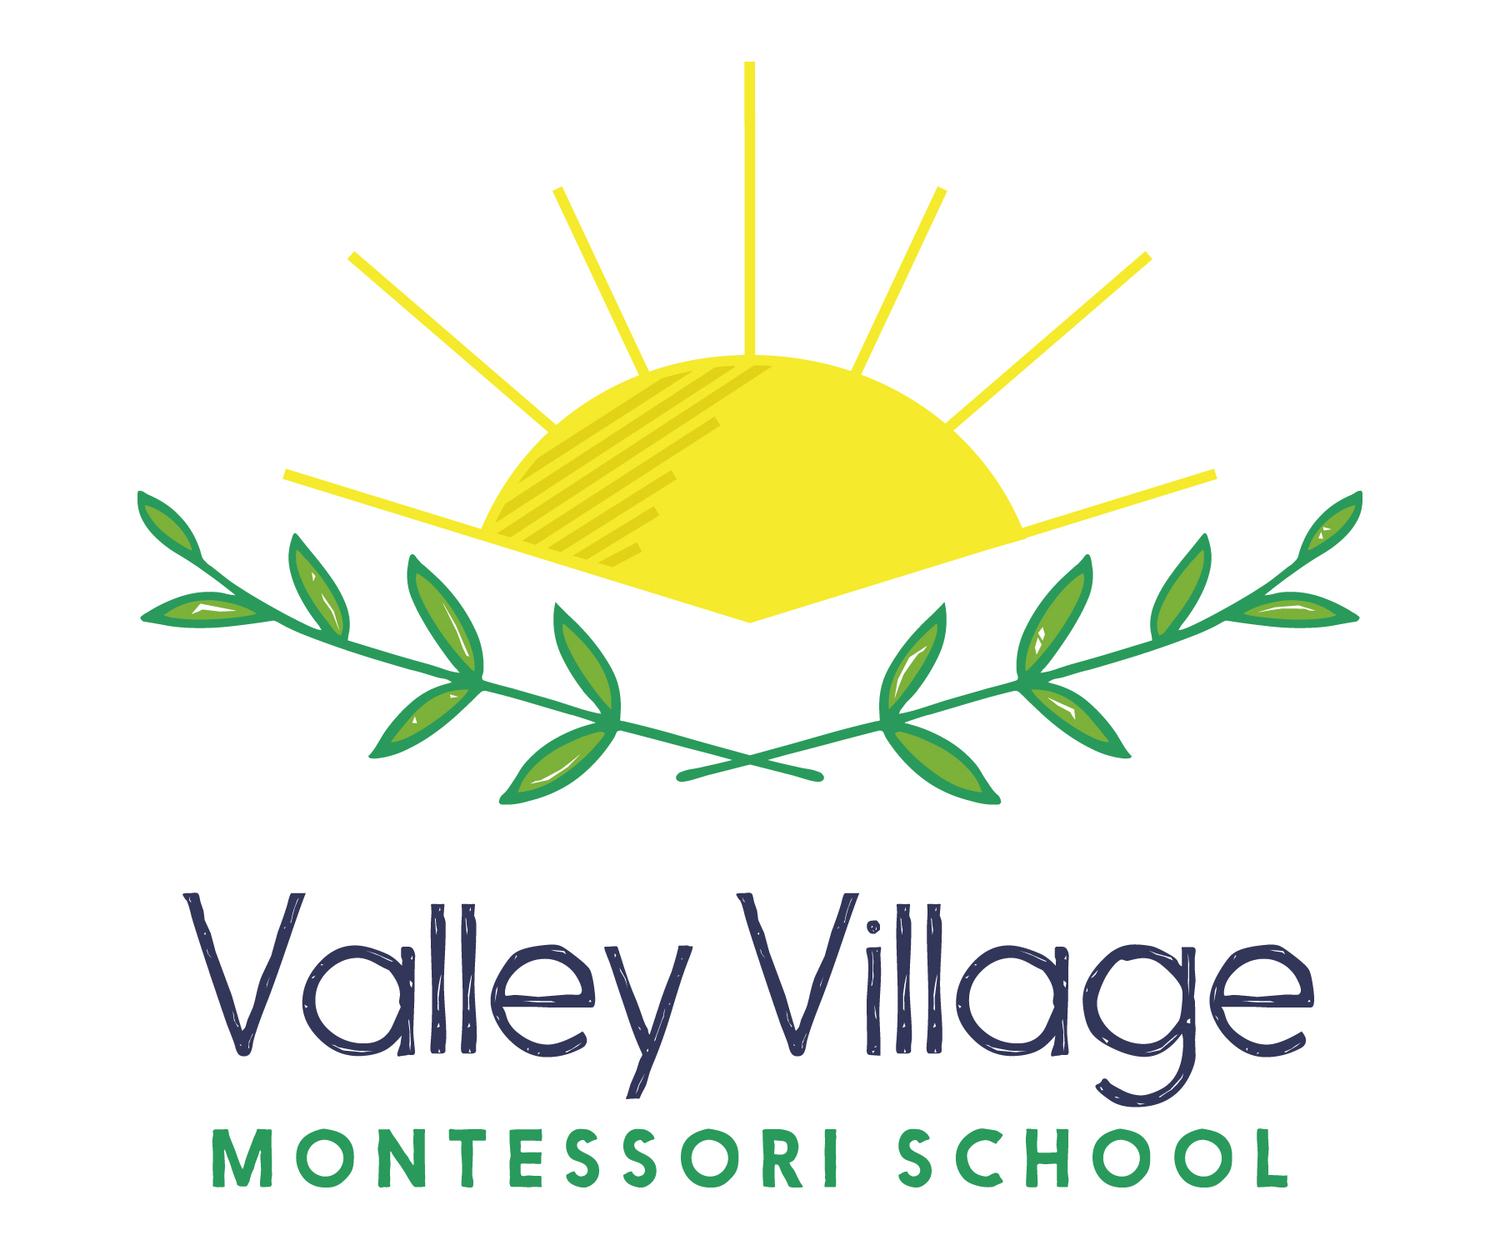 Valley Village Montessori